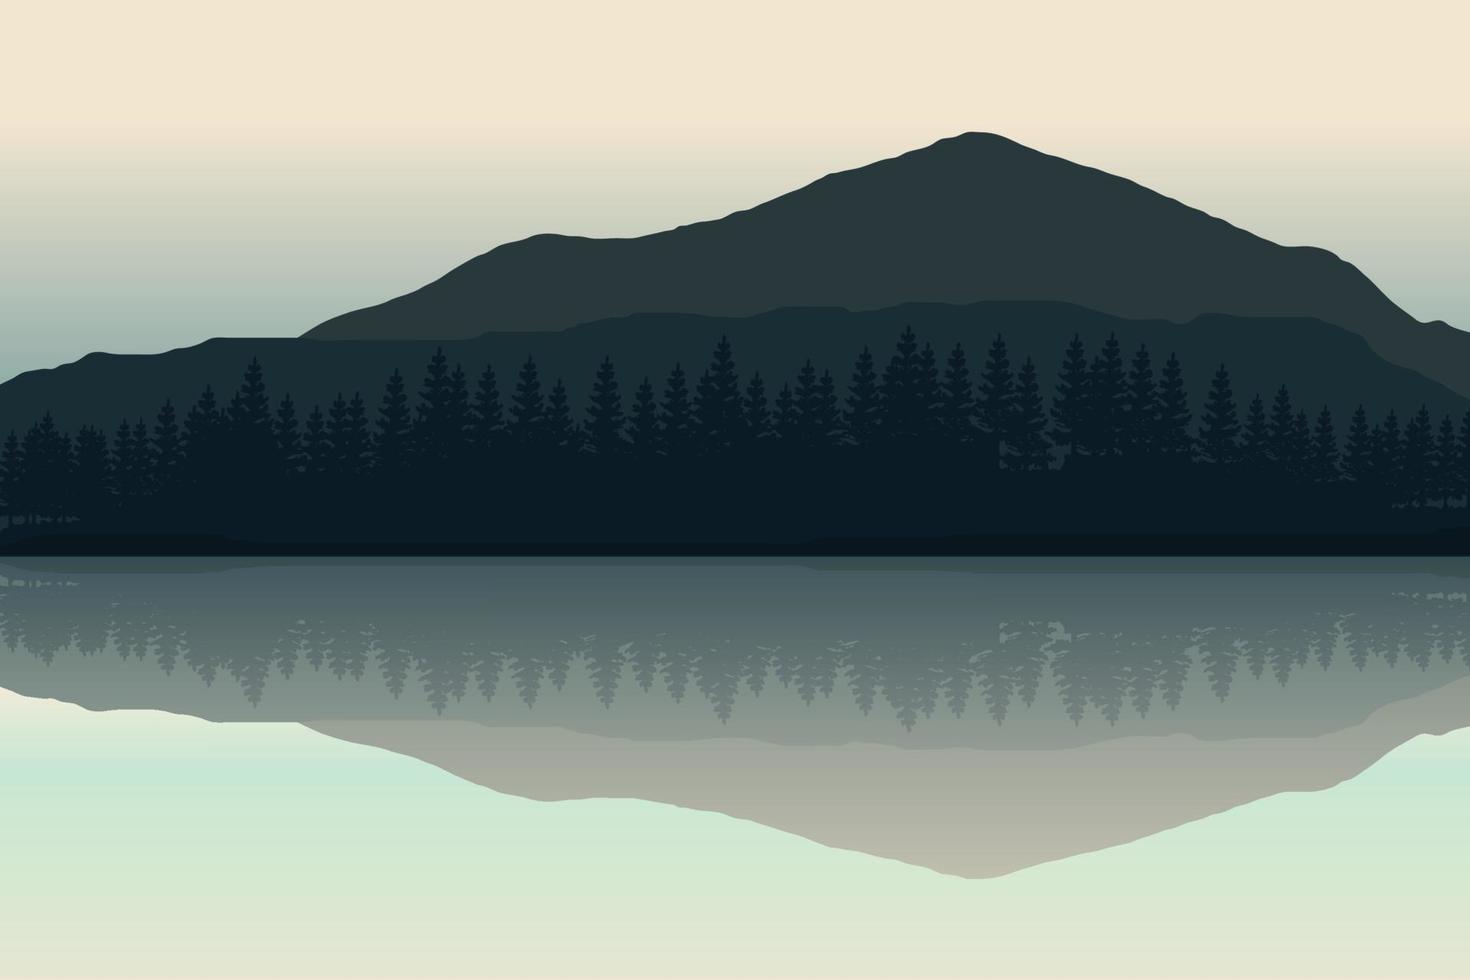 illustration vectorielle de paysage de montagne avec lac reflétant le paysage vecteur